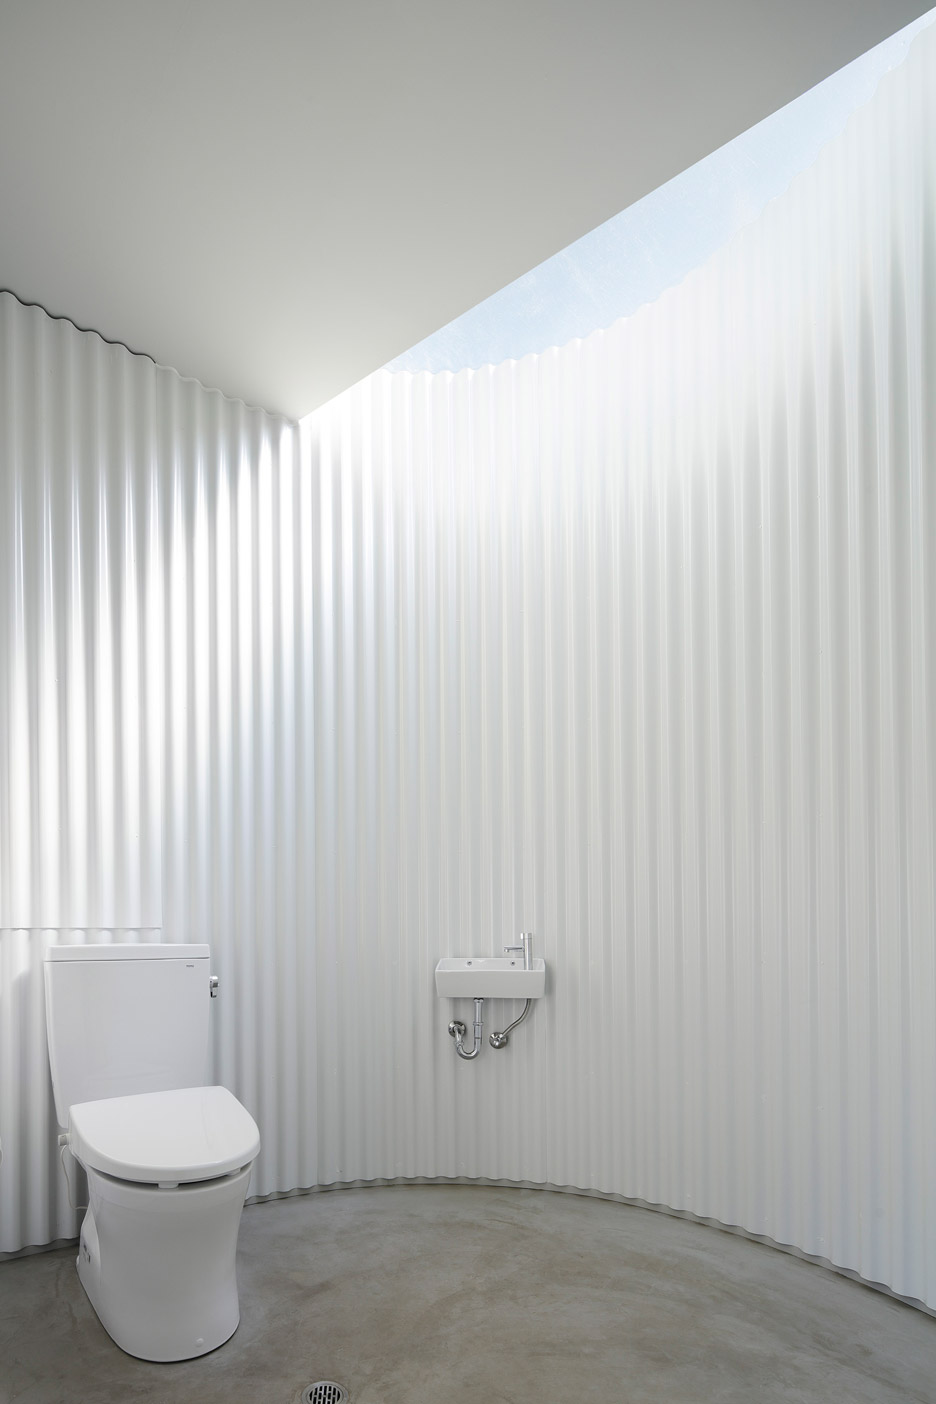 Isemachi Public Toilet by Kubo Tsushima Architects